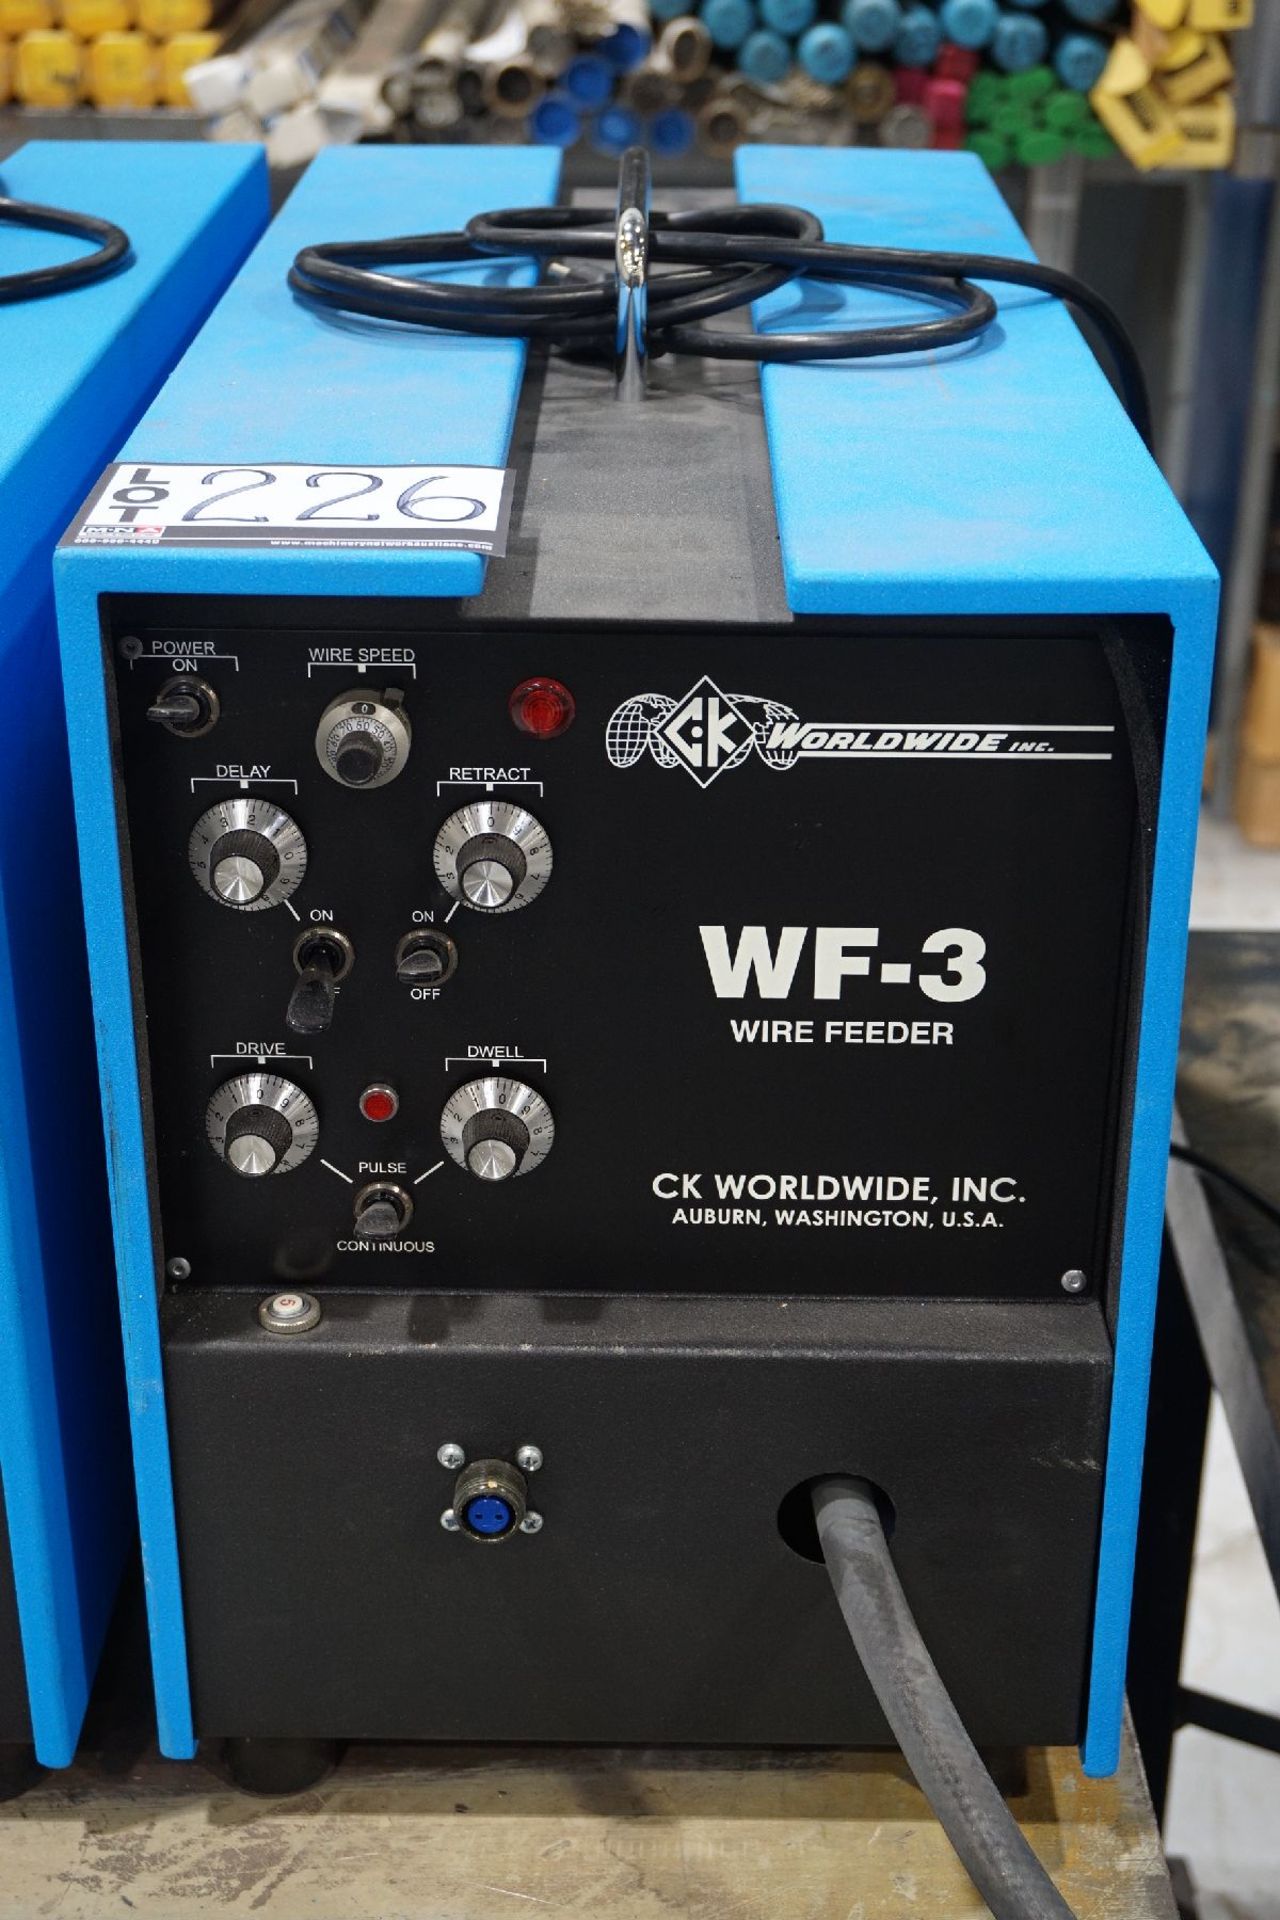 Ck Worldwide Model Wf-3 Wire Feeder